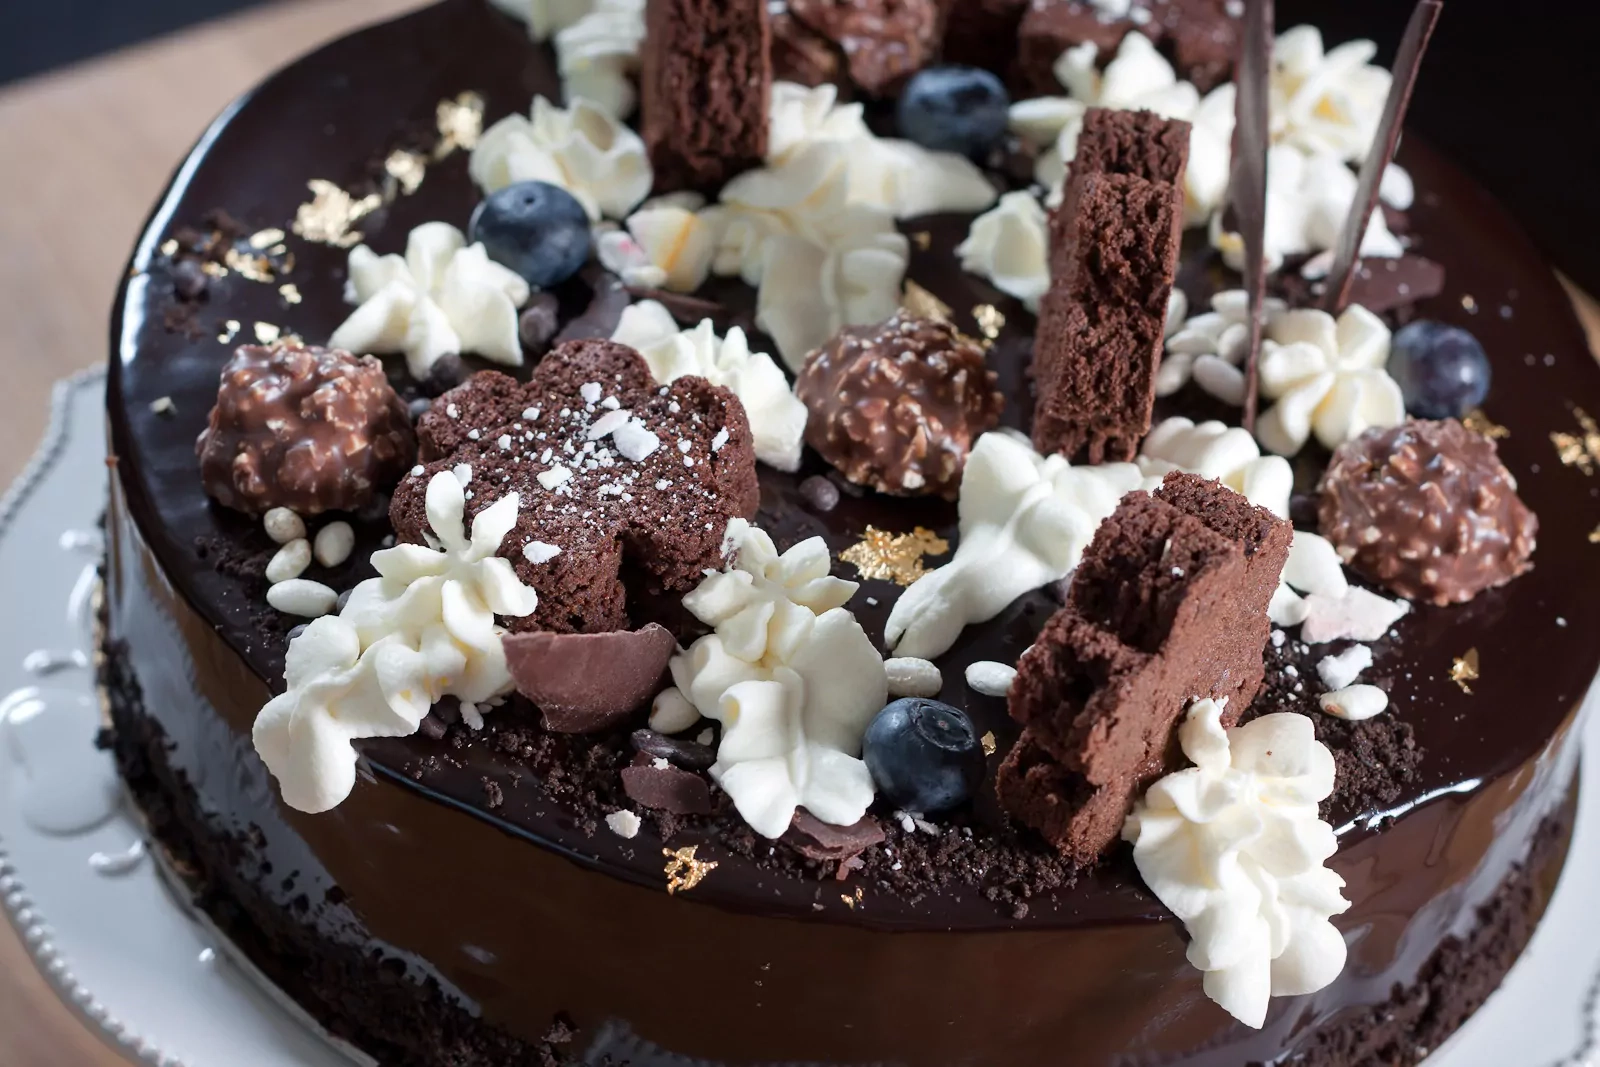 Tėčio gimtadienio tortas arba Šokoladinis tortas su traškiu "praline" sluoksniu